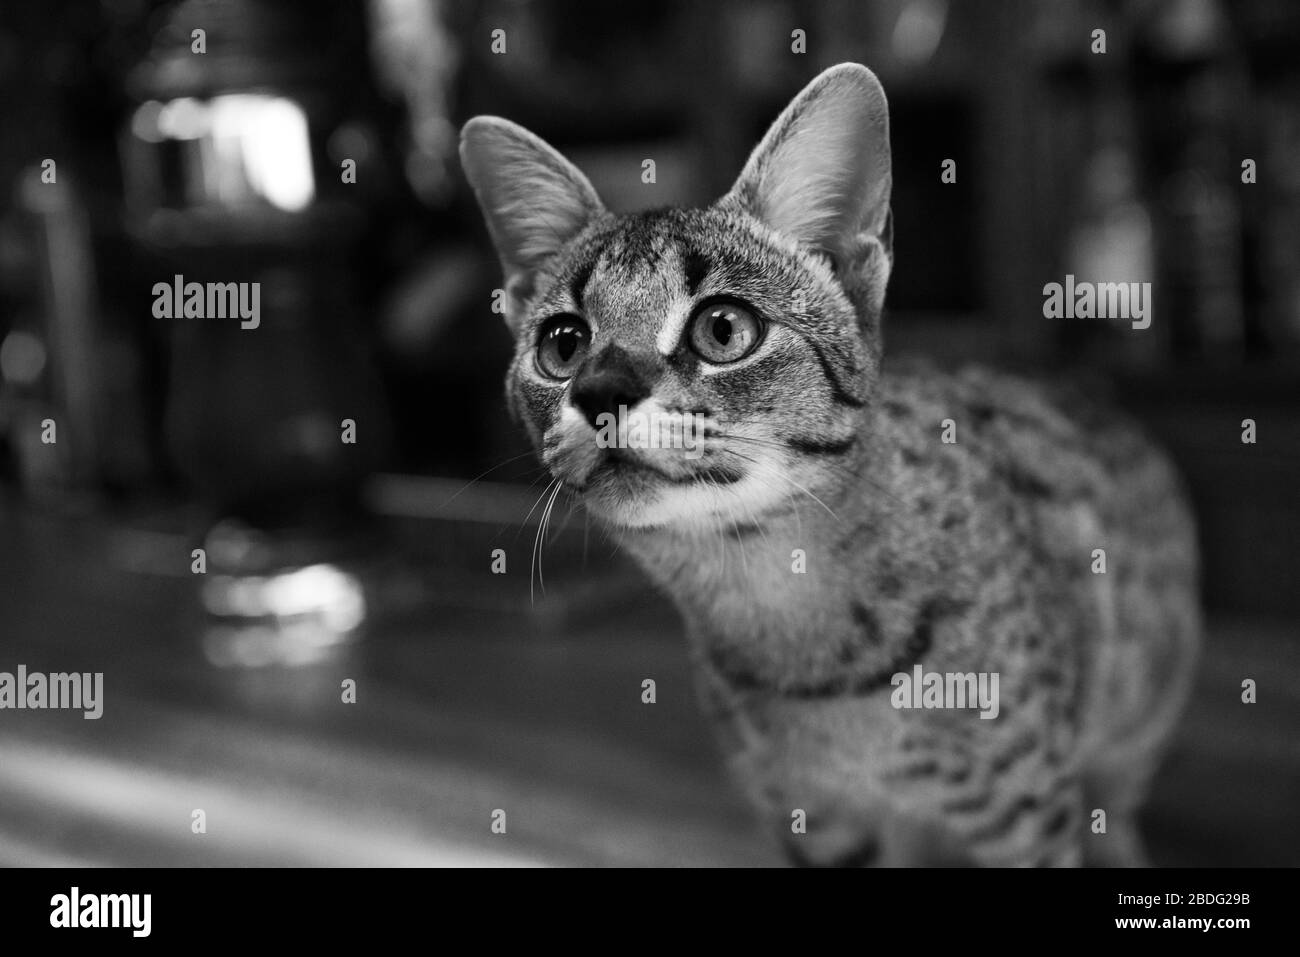 Savannah cat peeking toward the camera Stock Photo